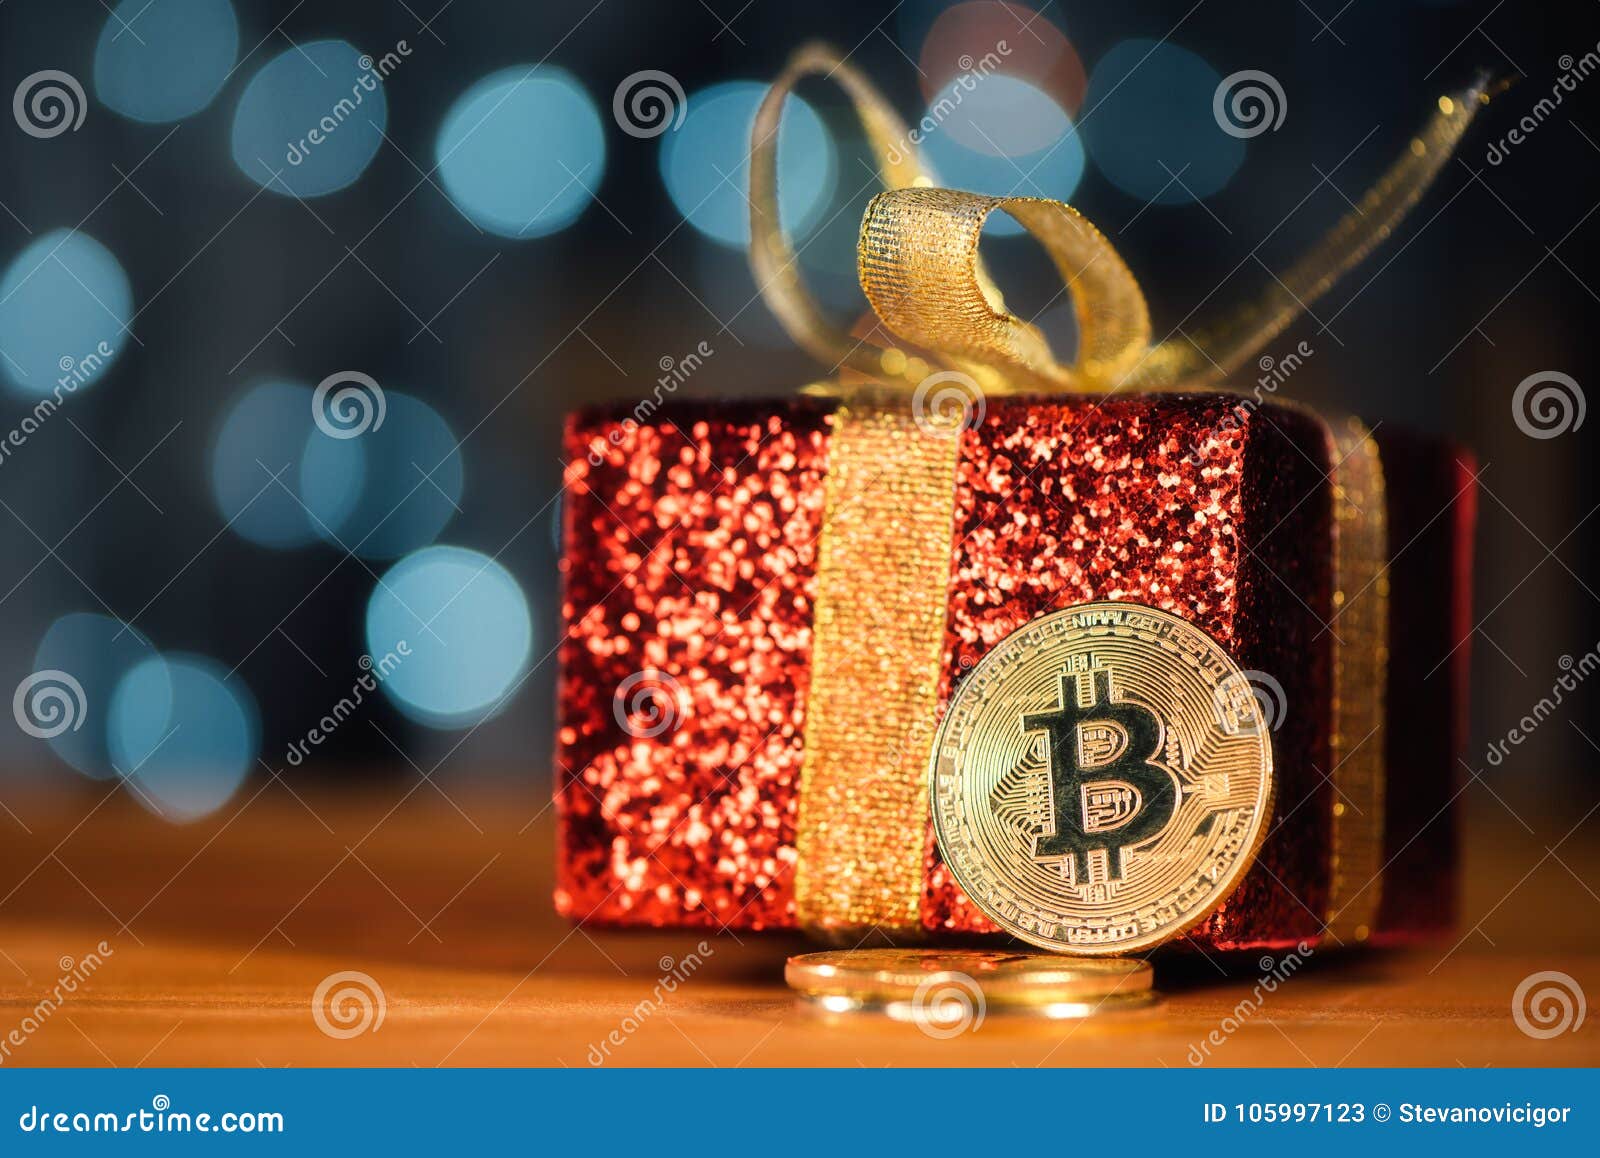 bitcoin regalo di natale